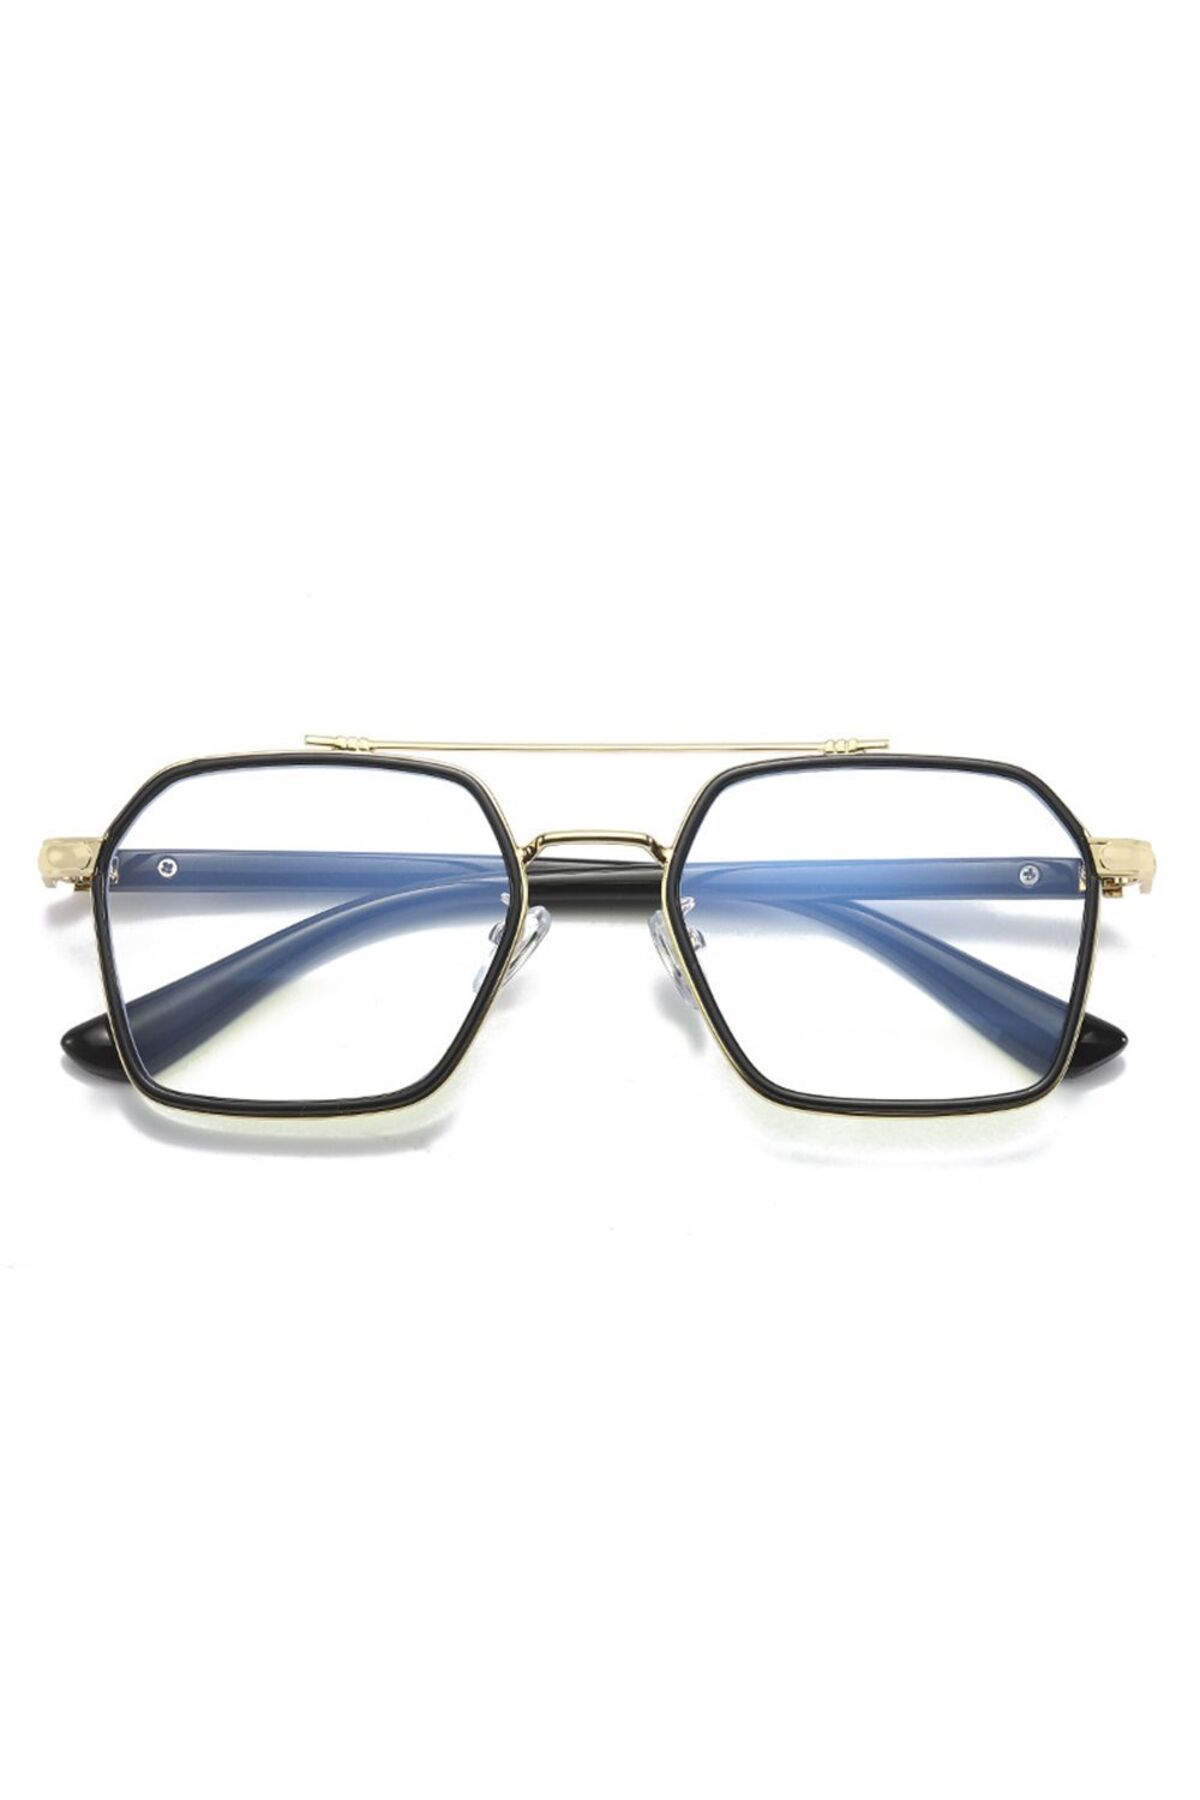 Jewval Jwl Sorbon Erkek Anti Blue Gözlük Modelleri Steampunk Çalışma Gözlüğü